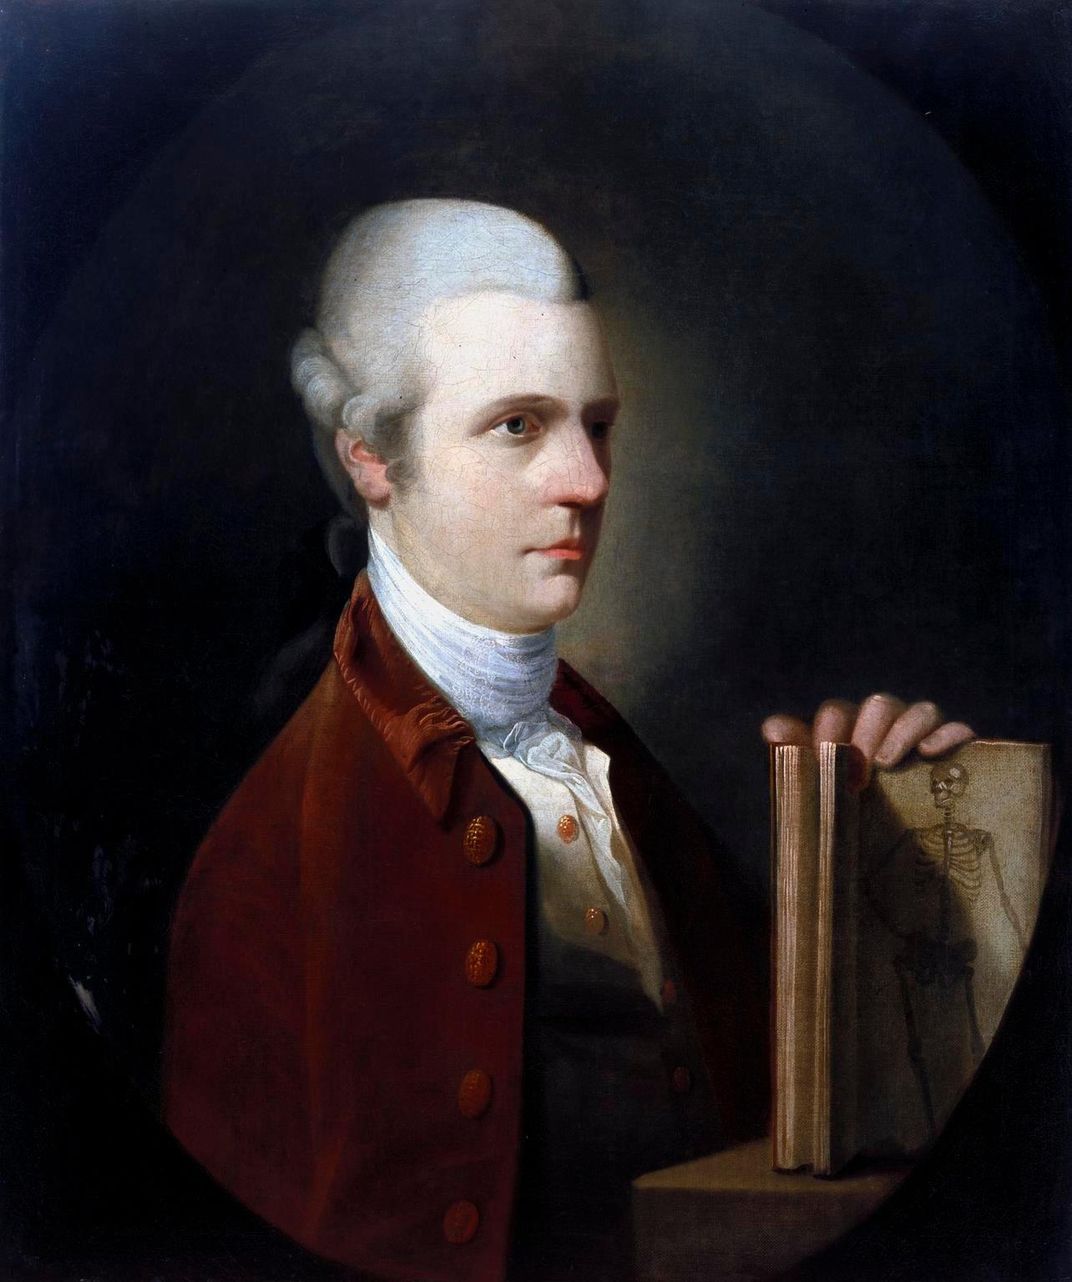 Unknown man in 18th-century portrait